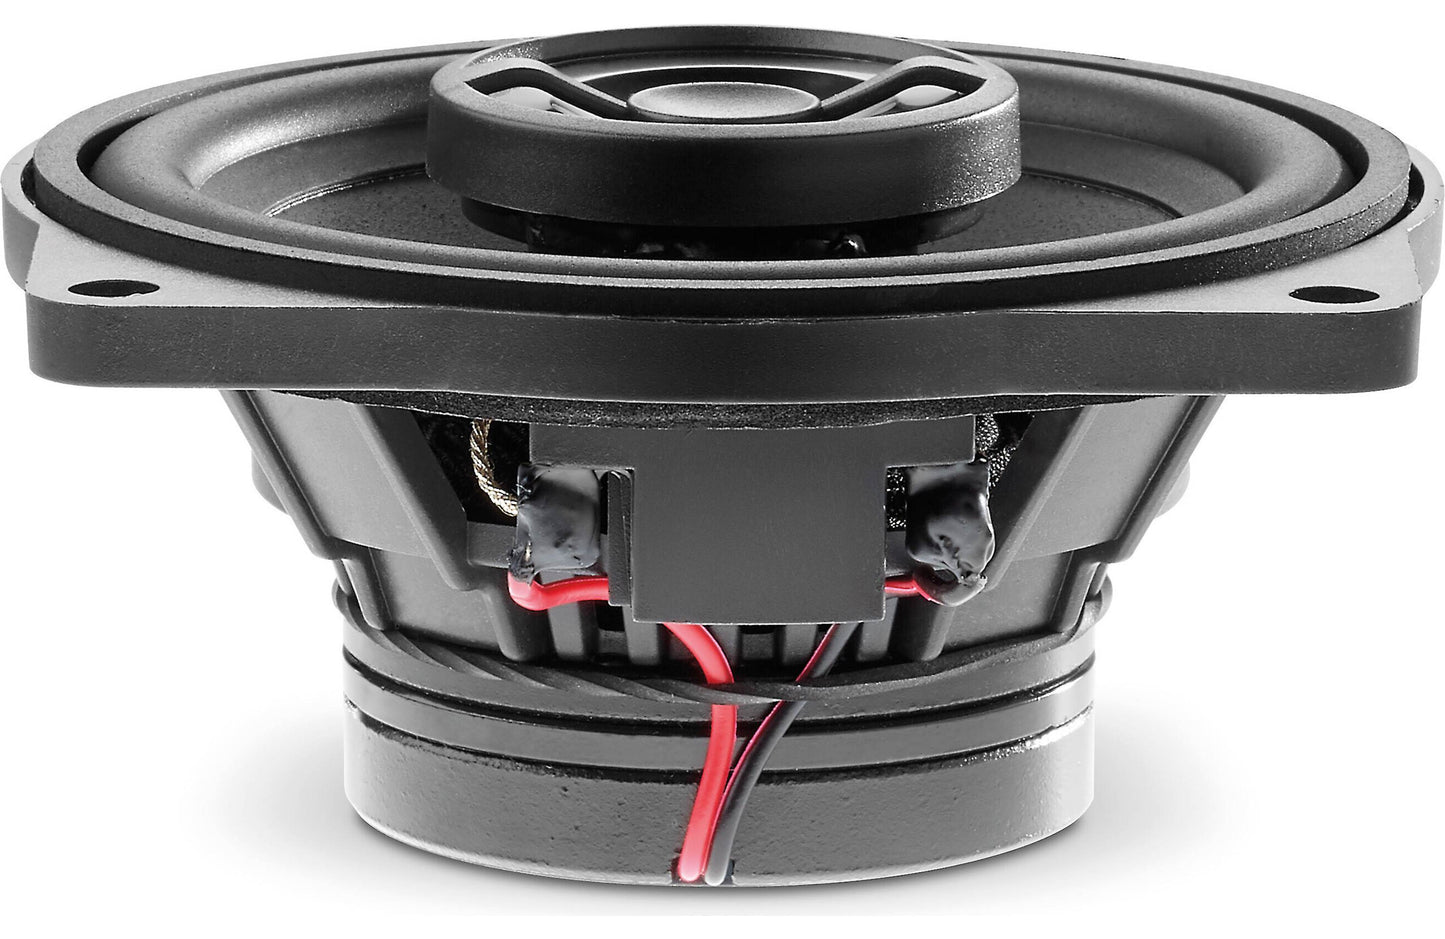 Focal Inside ICC BMW 100 5" center channel speaker for select BMW models